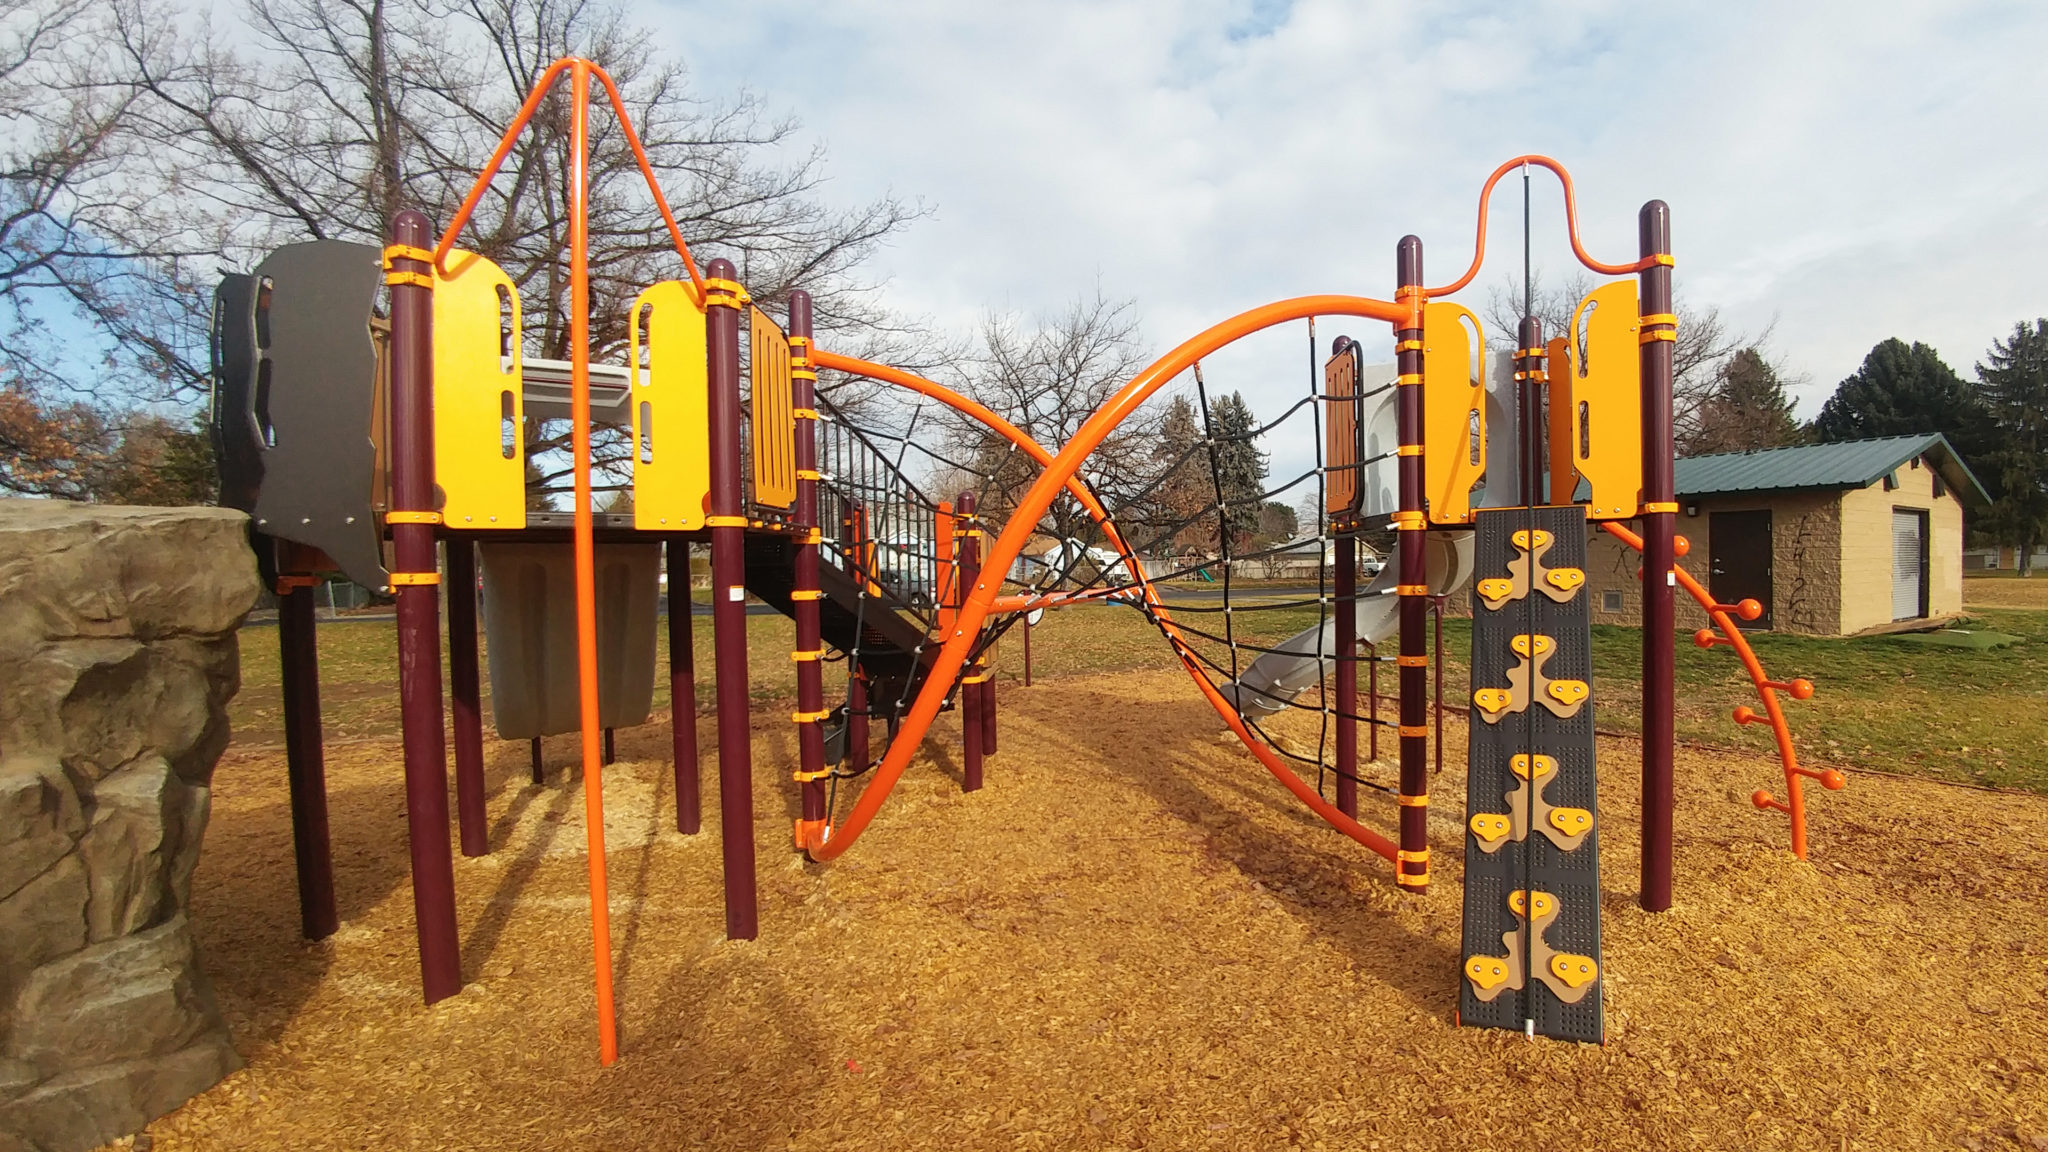 Gardner Park Playground